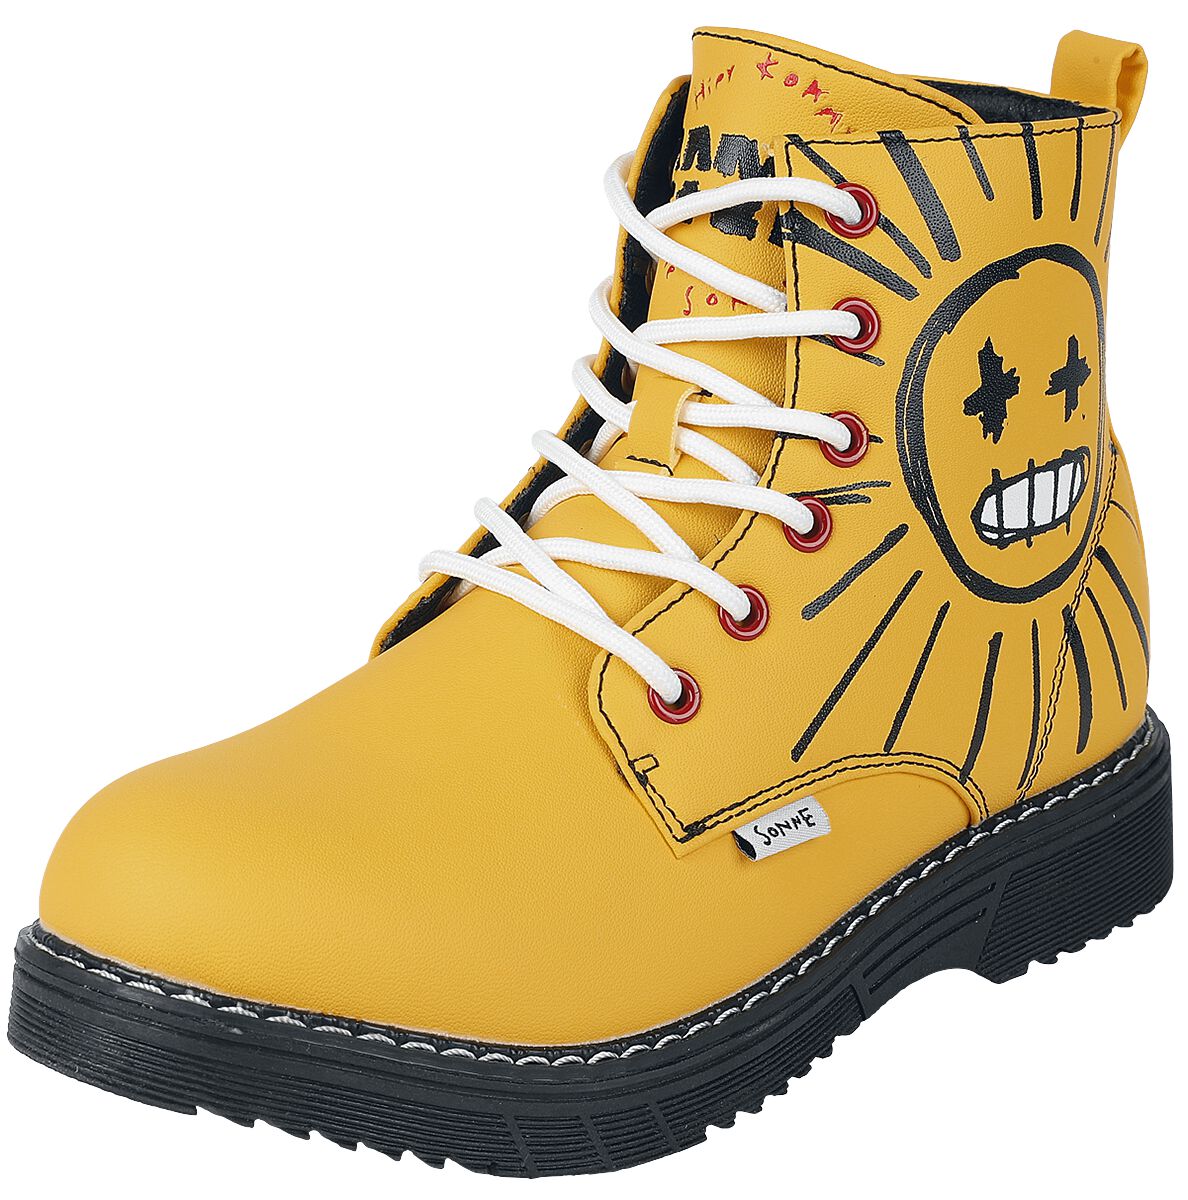 Rammstein Boot - EU37 bis EU41 - für Damen - Größe EU40 - gelb  - Lizenziertes Merchandise!